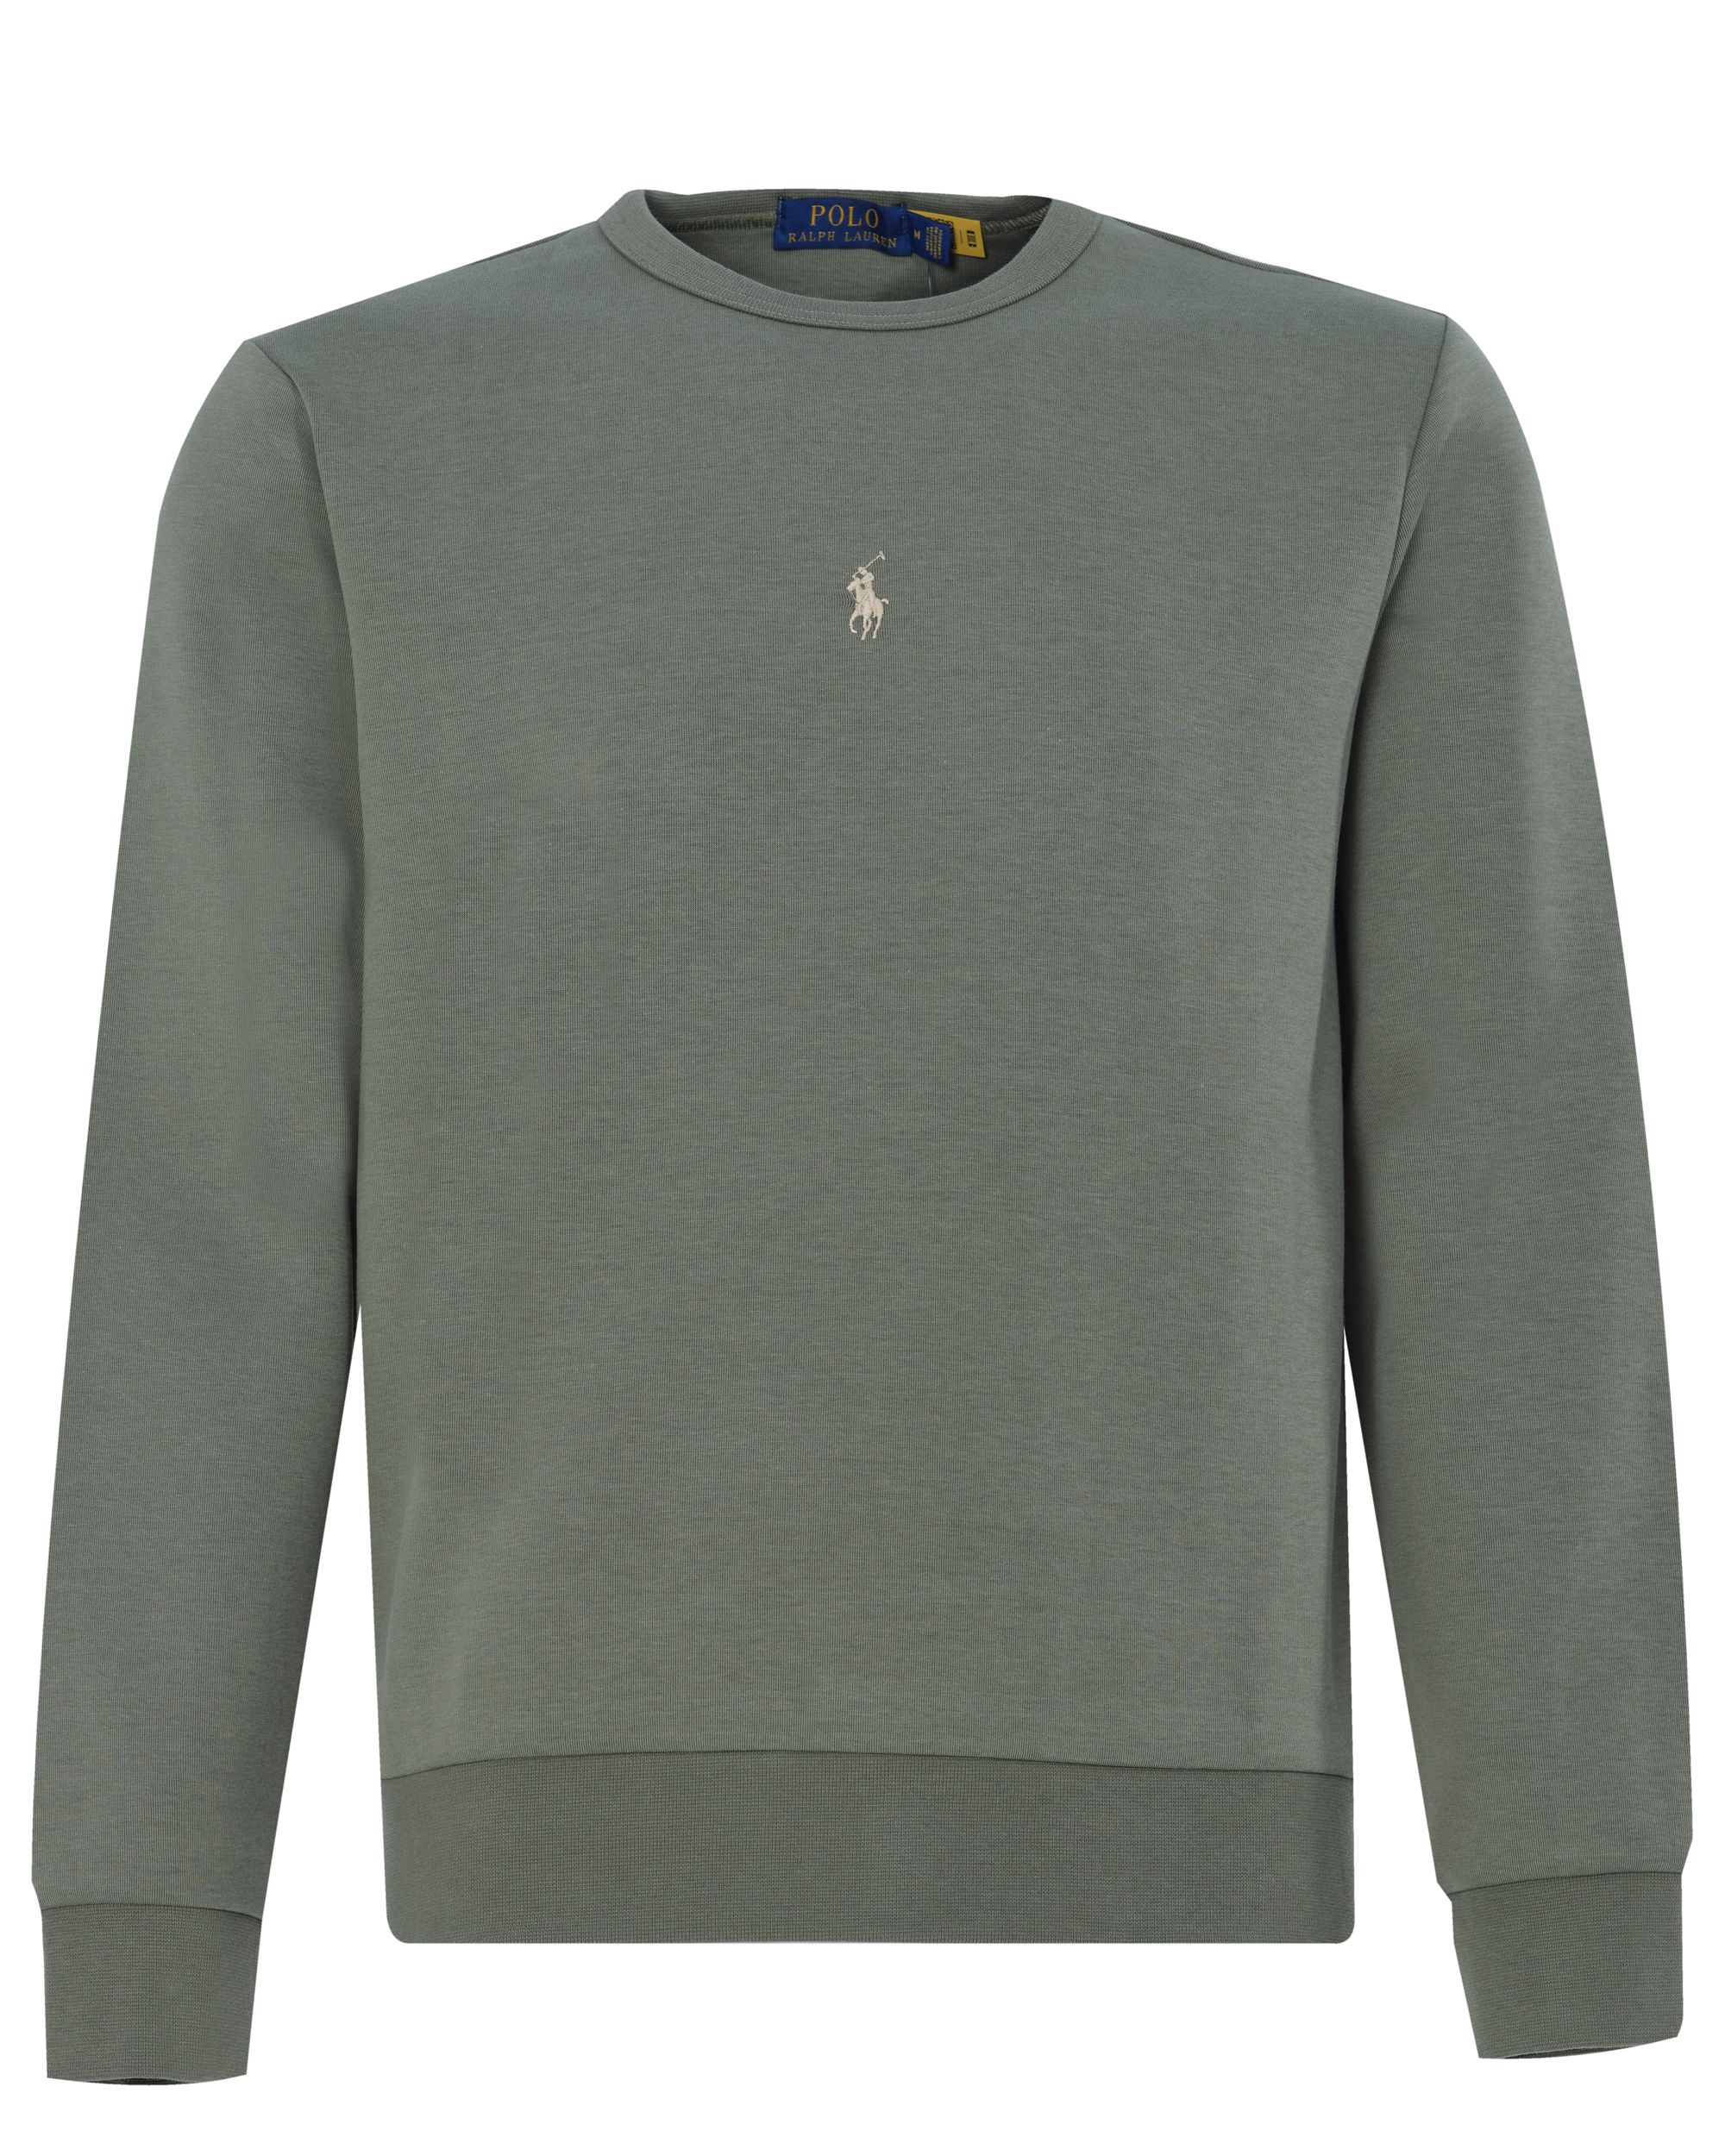 Polo Ralph Lauren Sweater Groen 080629-001-L